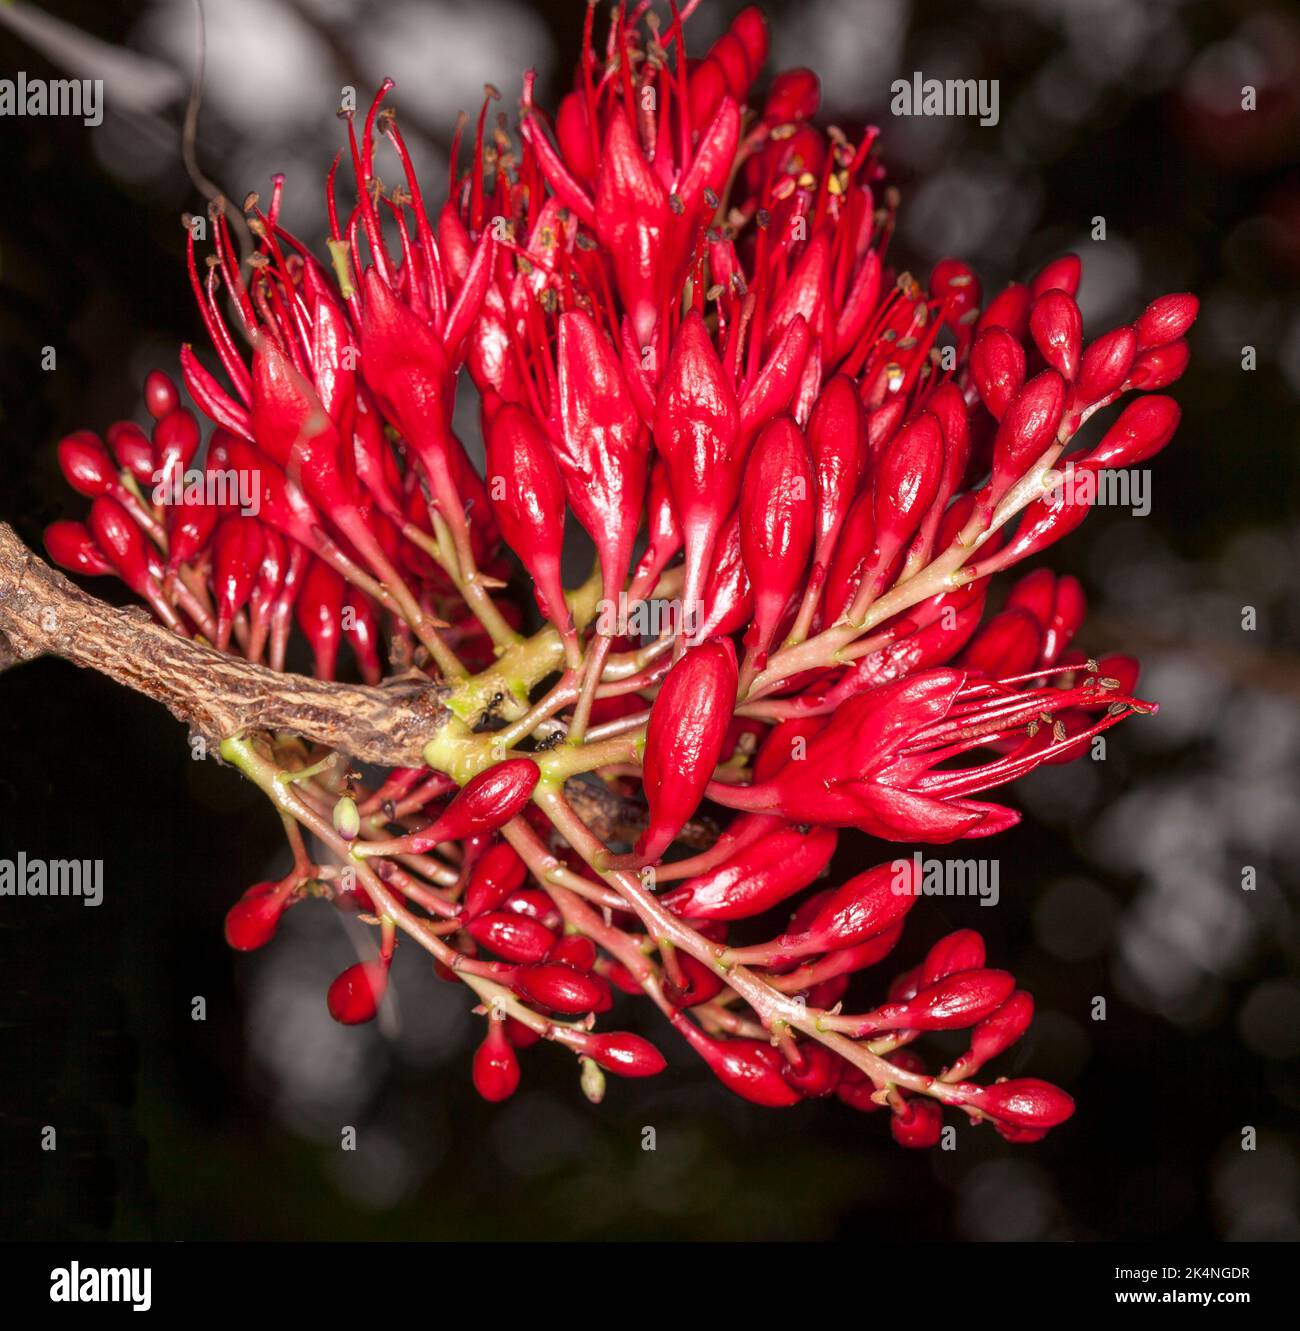 Gruppe von leuchtend roten Blüten von Schotia brachypetala, betrunkener Papageienbaum / weinende Buren, afrikanischer Baum, der in Australien wächst Stockfoto